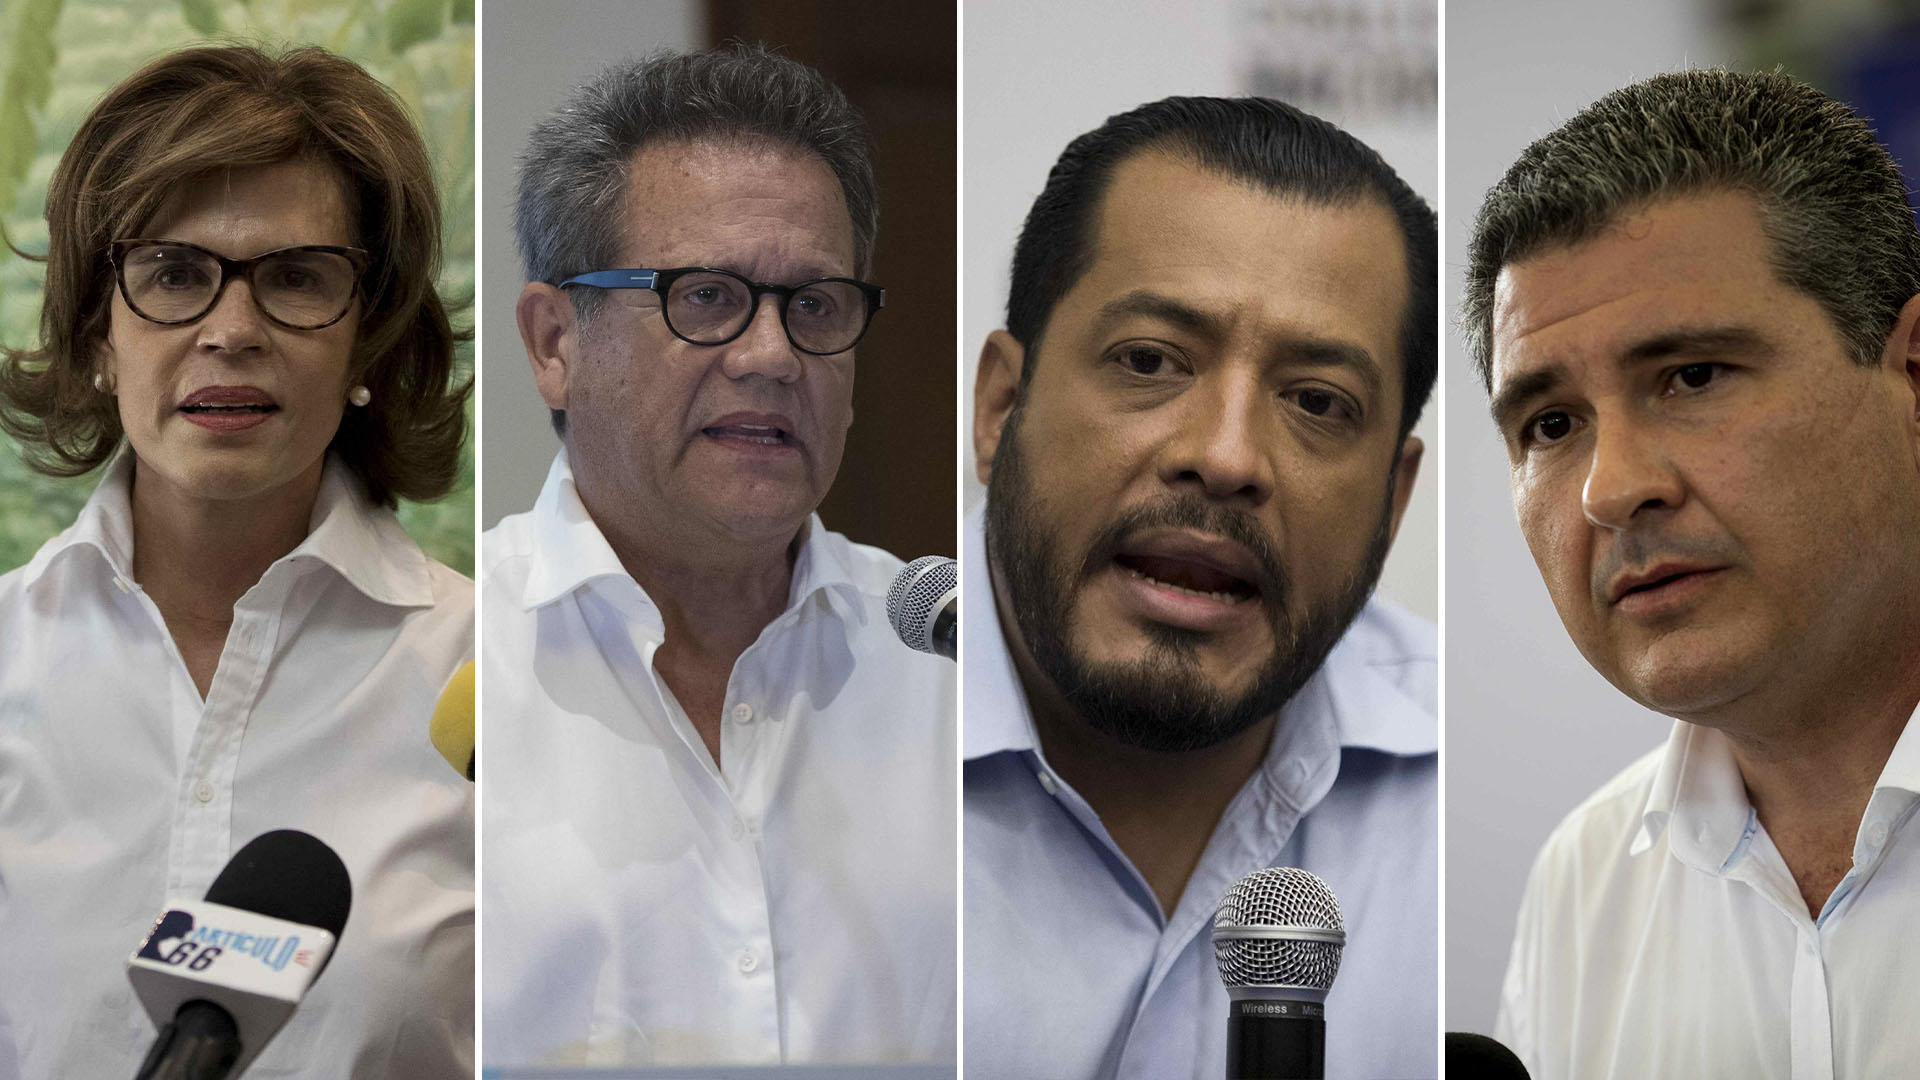 Los candidatos opositores Cristiana Chamorro, Arturo Cruz, Félix Maradiaga Blandon, y Juan Sebastián Chamorro, fueron detenidos por el régimen de Ortega